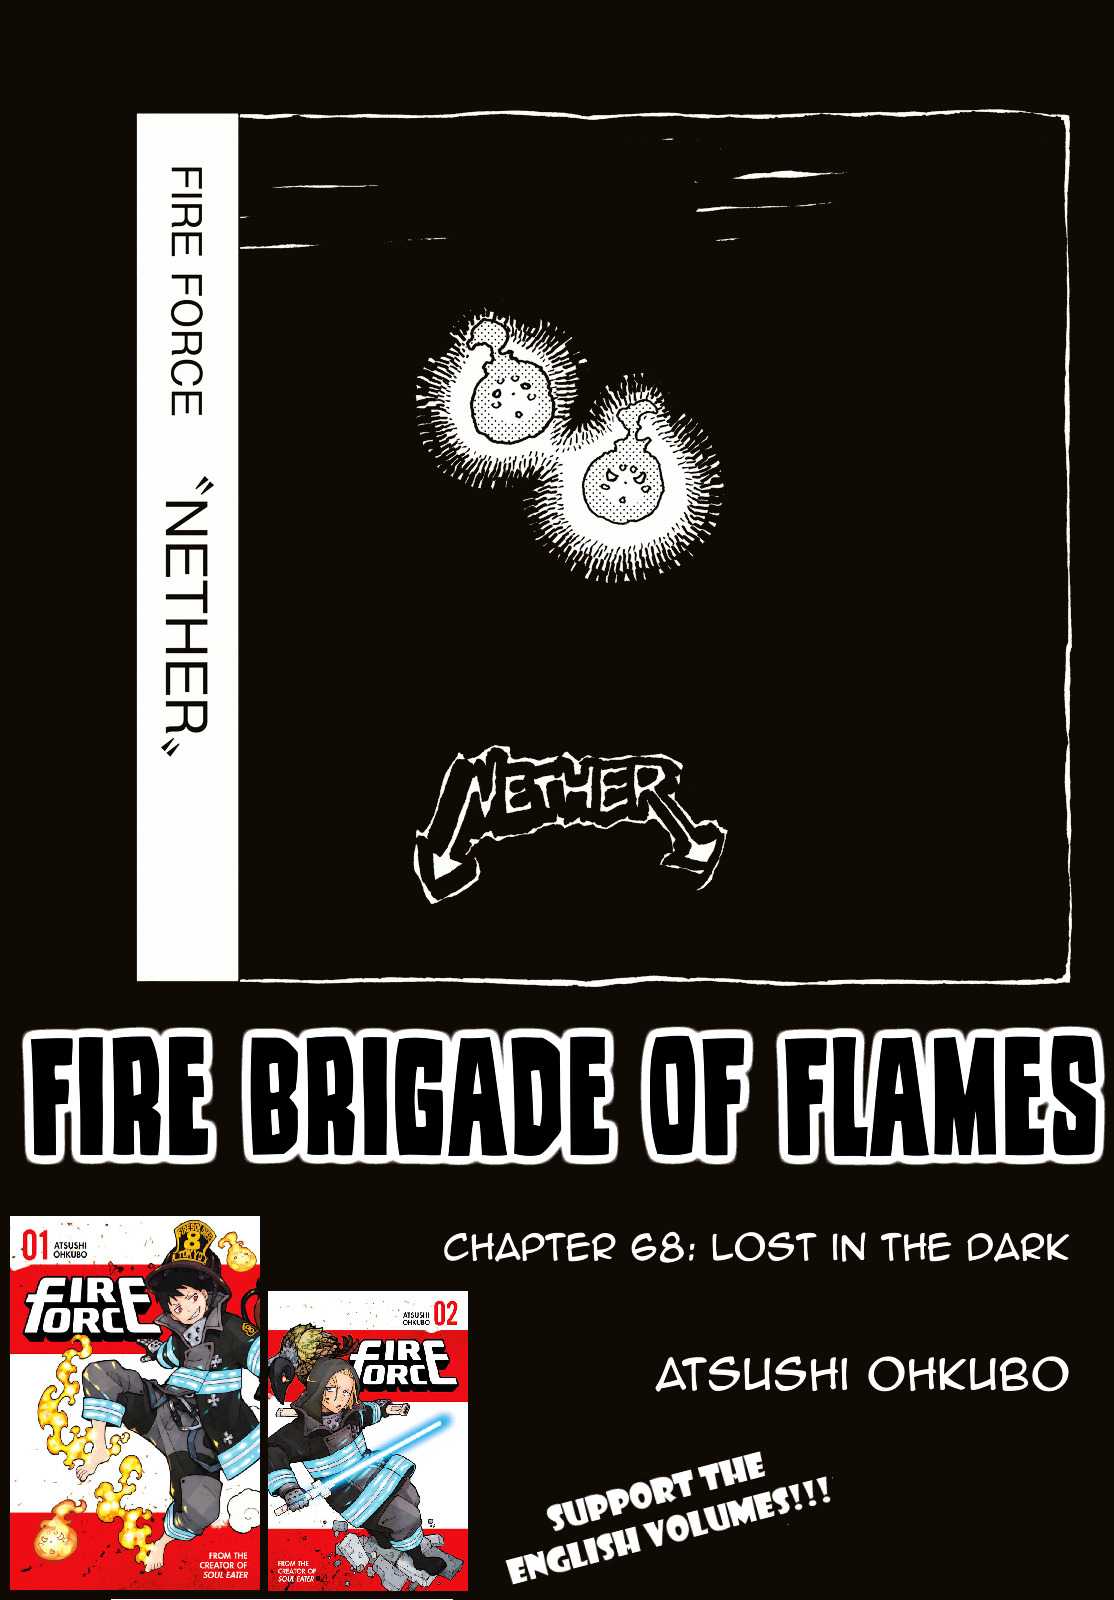 Fire Brigade Of Flames 68 1